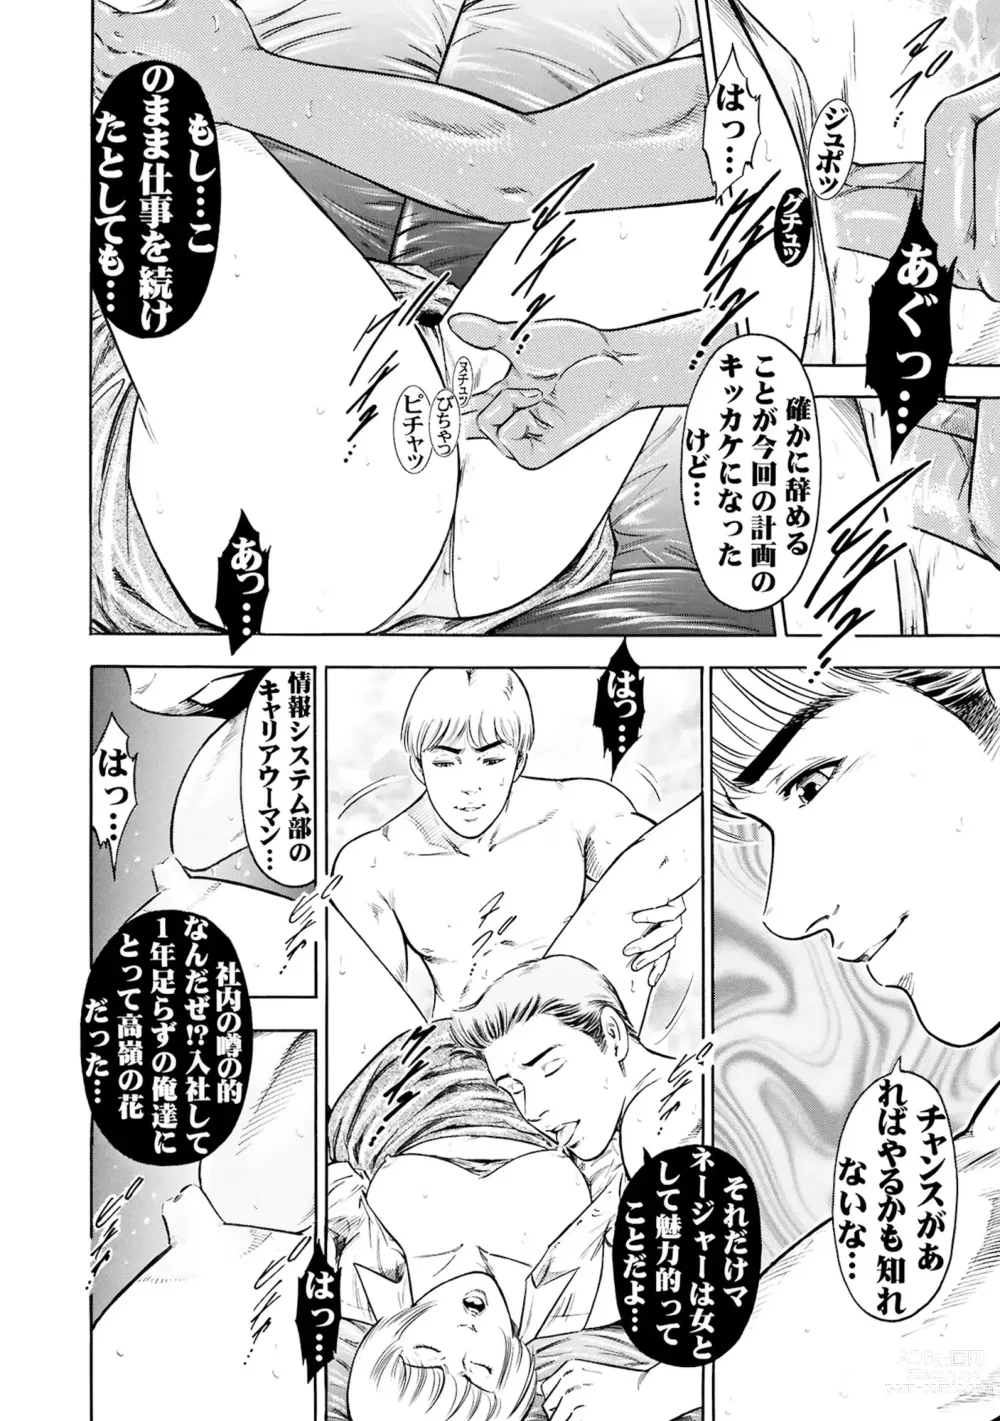 Page 16 of manga Jitsuroku Shouwaru 3 Bijin Joushi Biyaku o Nomasare Buka no SEX Doll ni